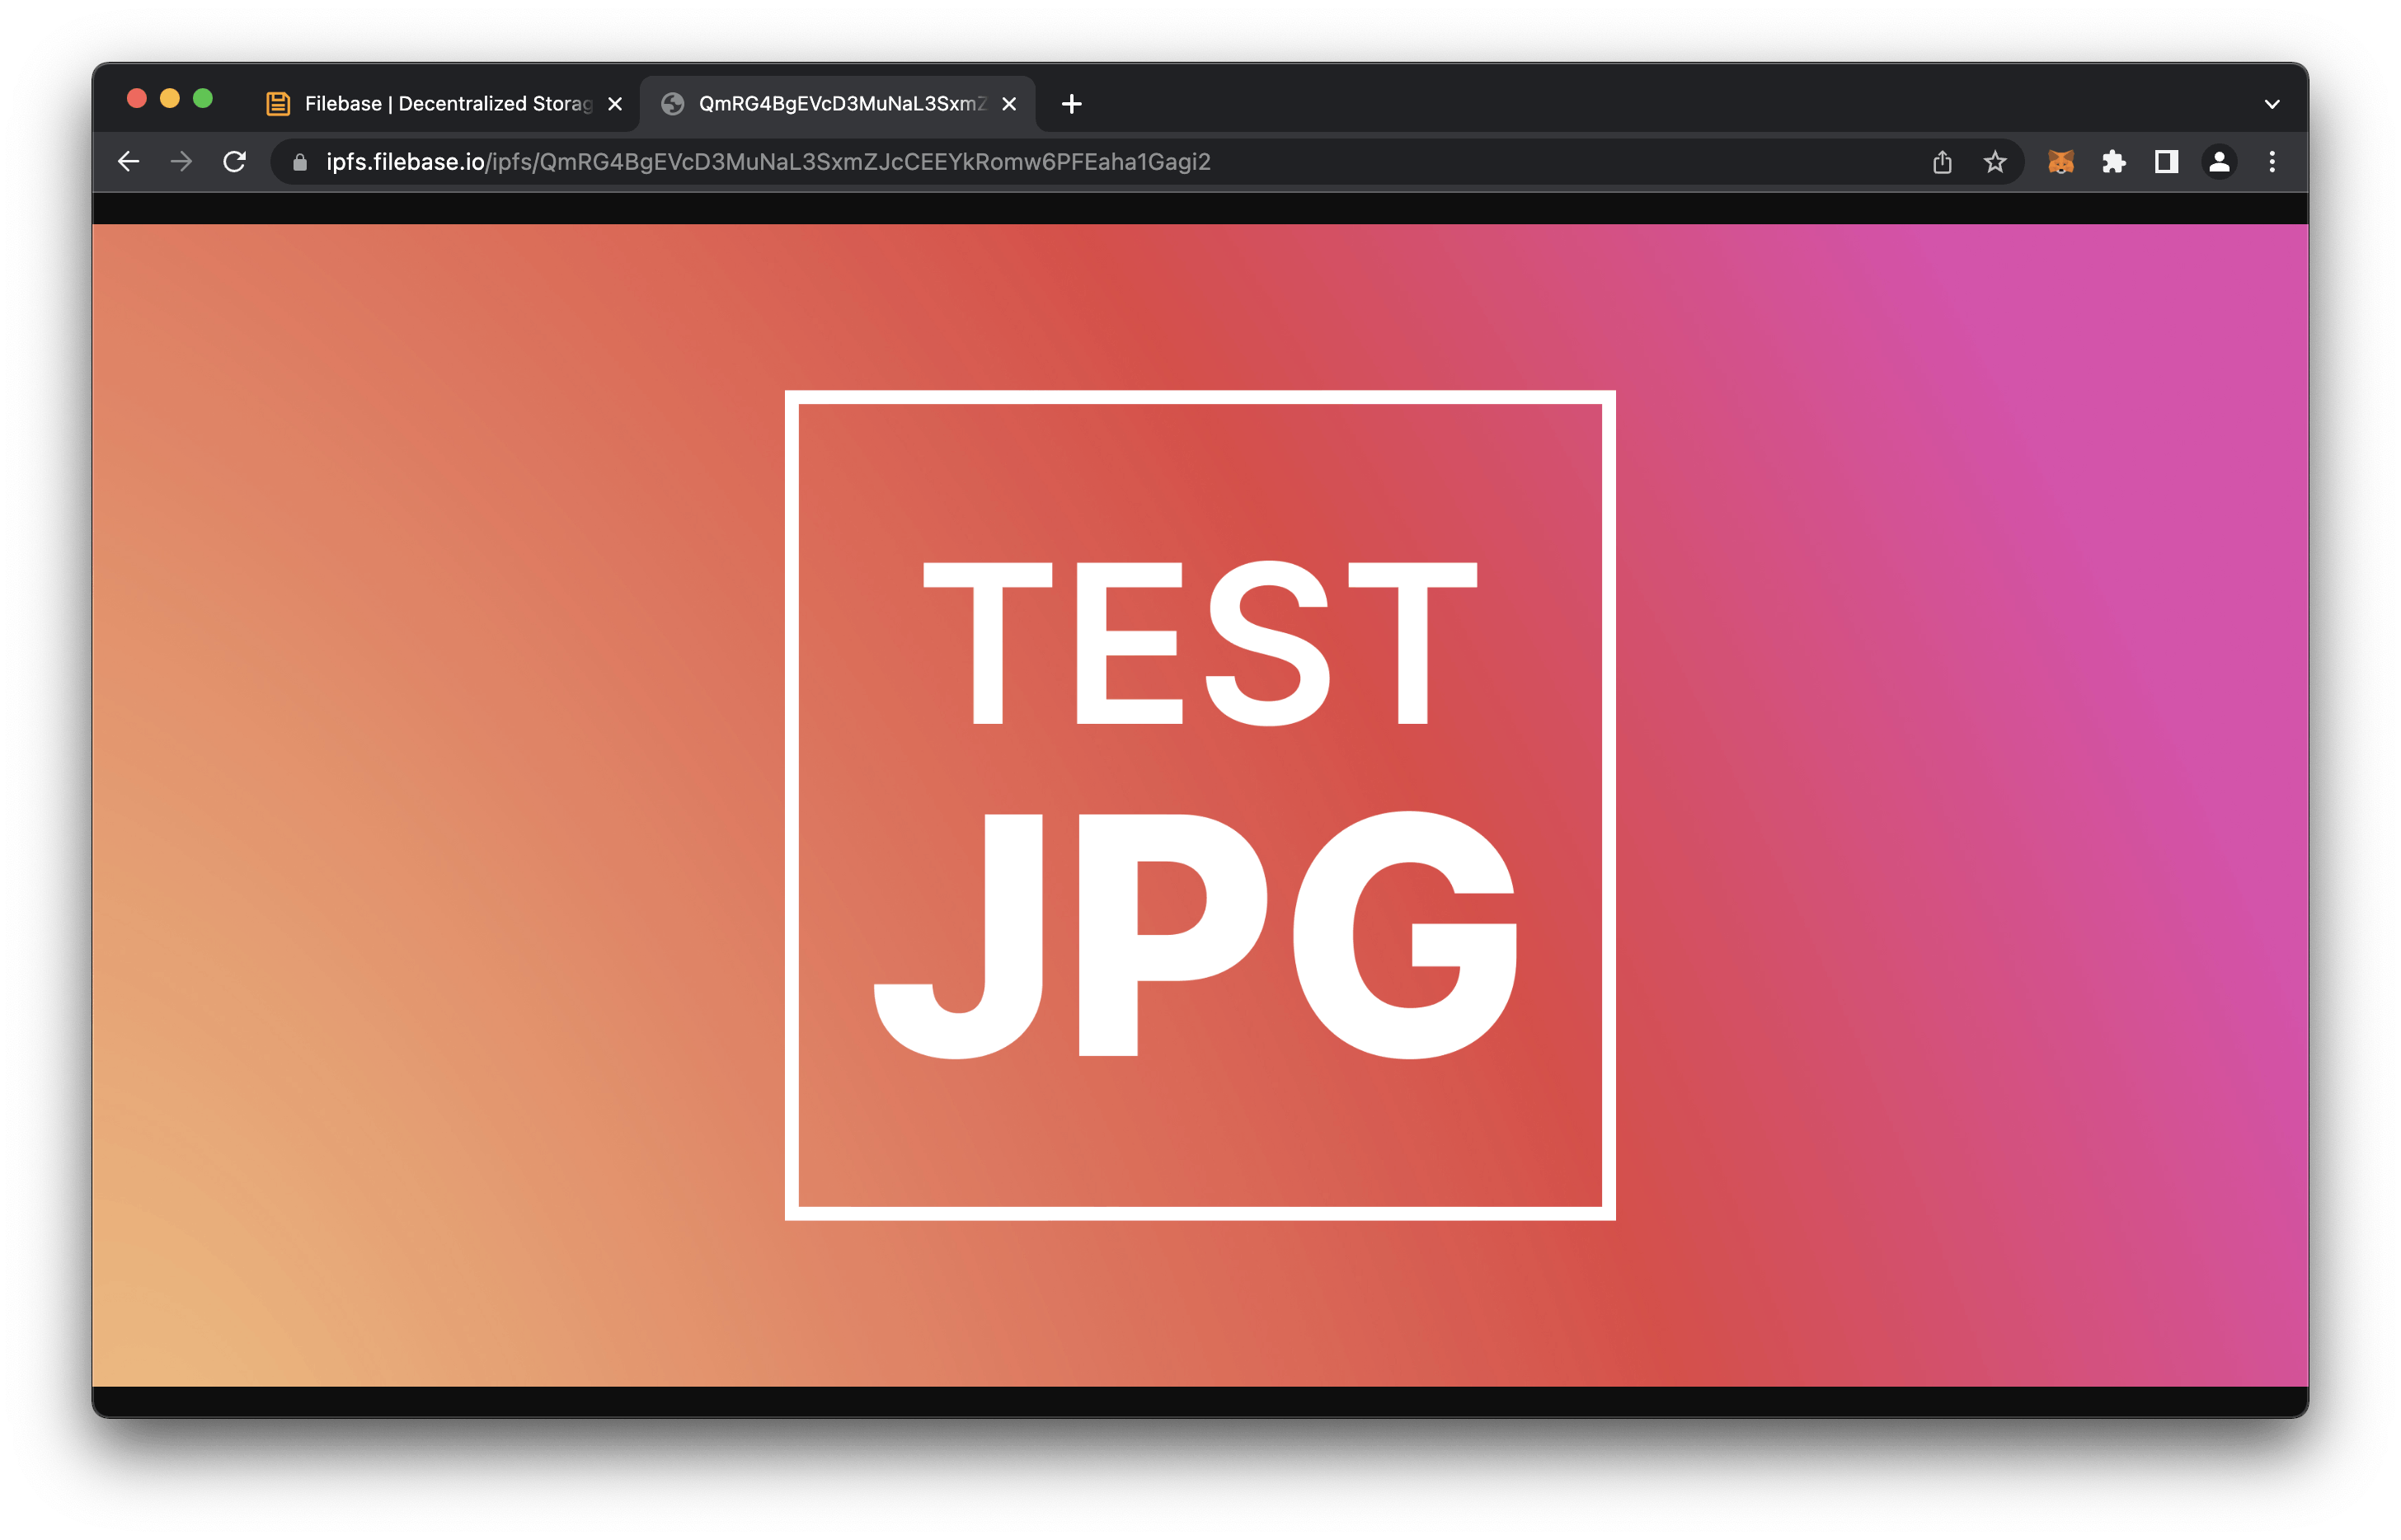 IPFS Test JPG